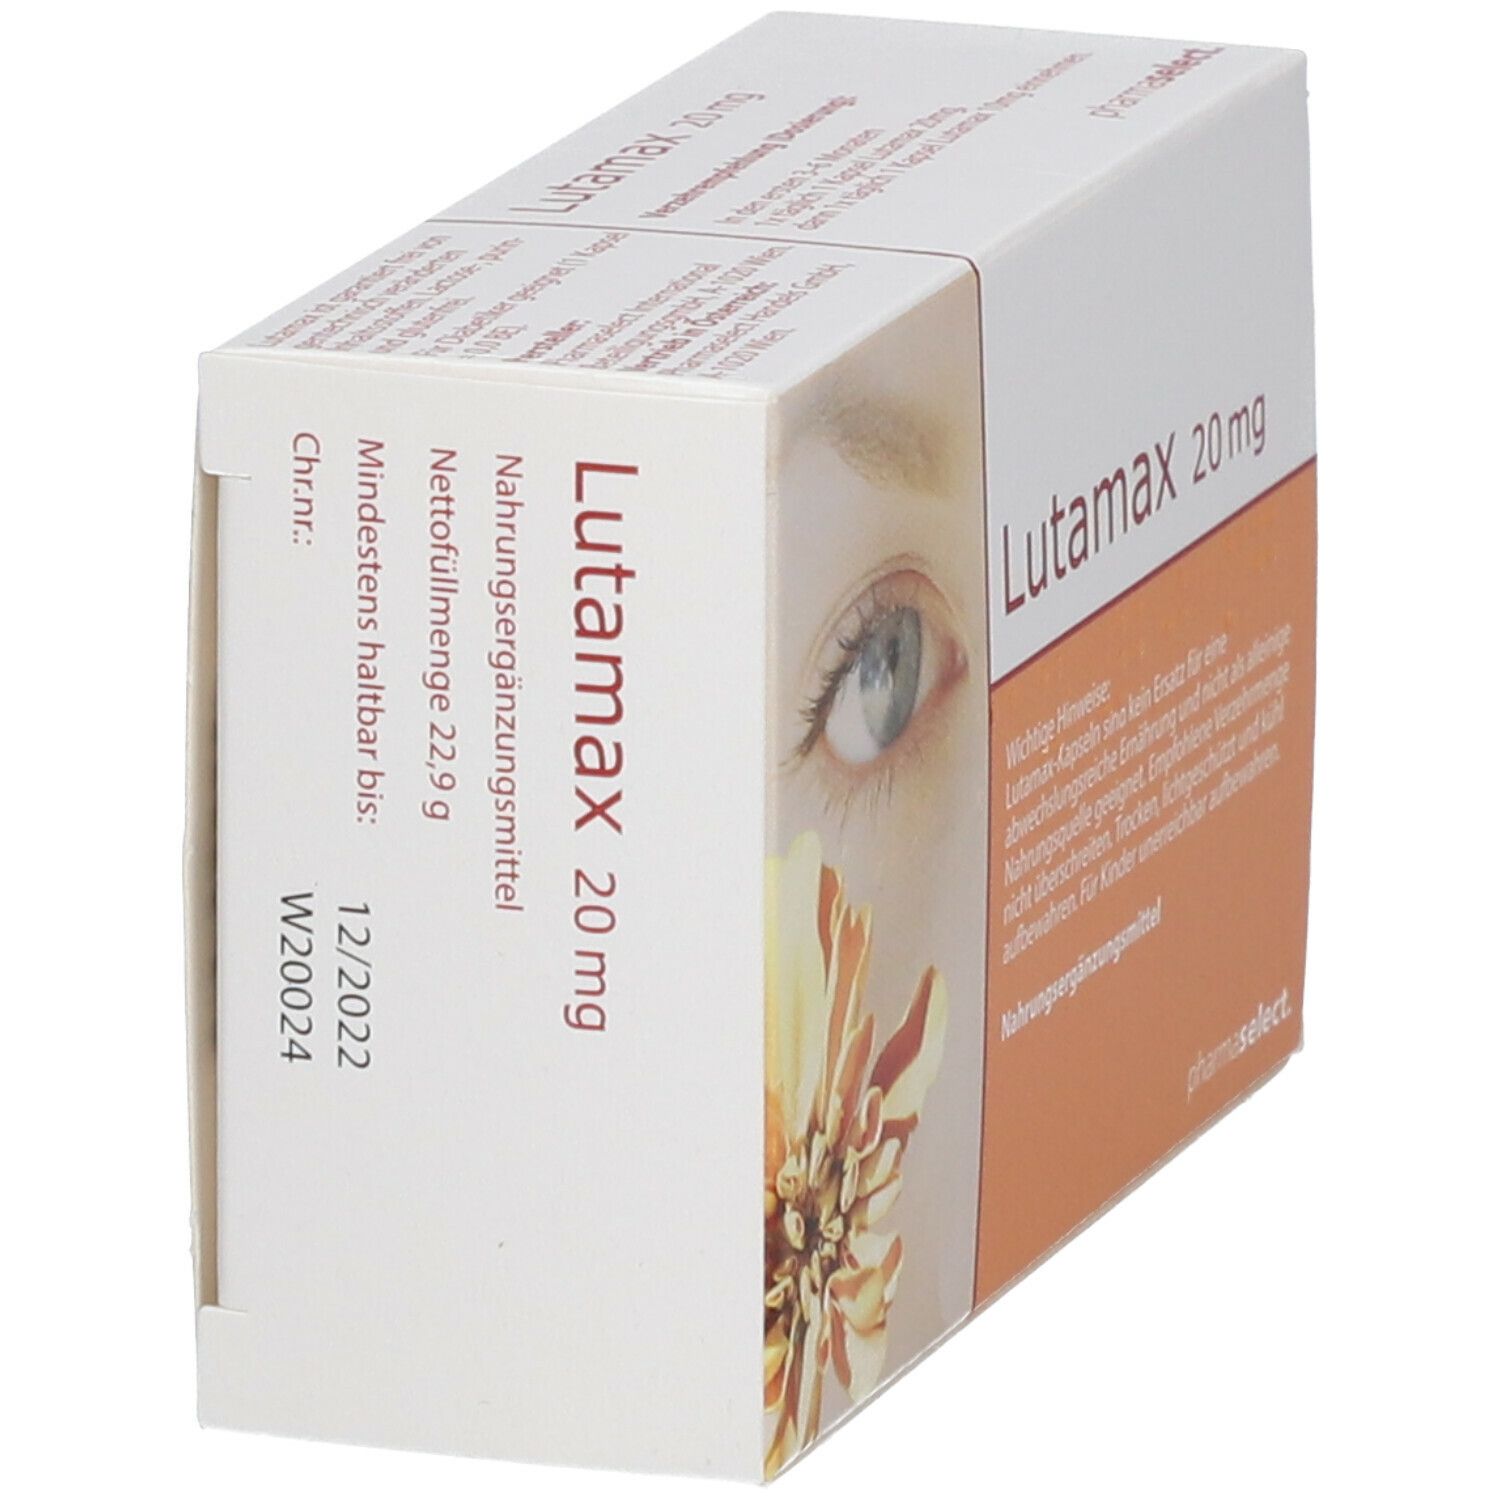 Lutamax 20 mg